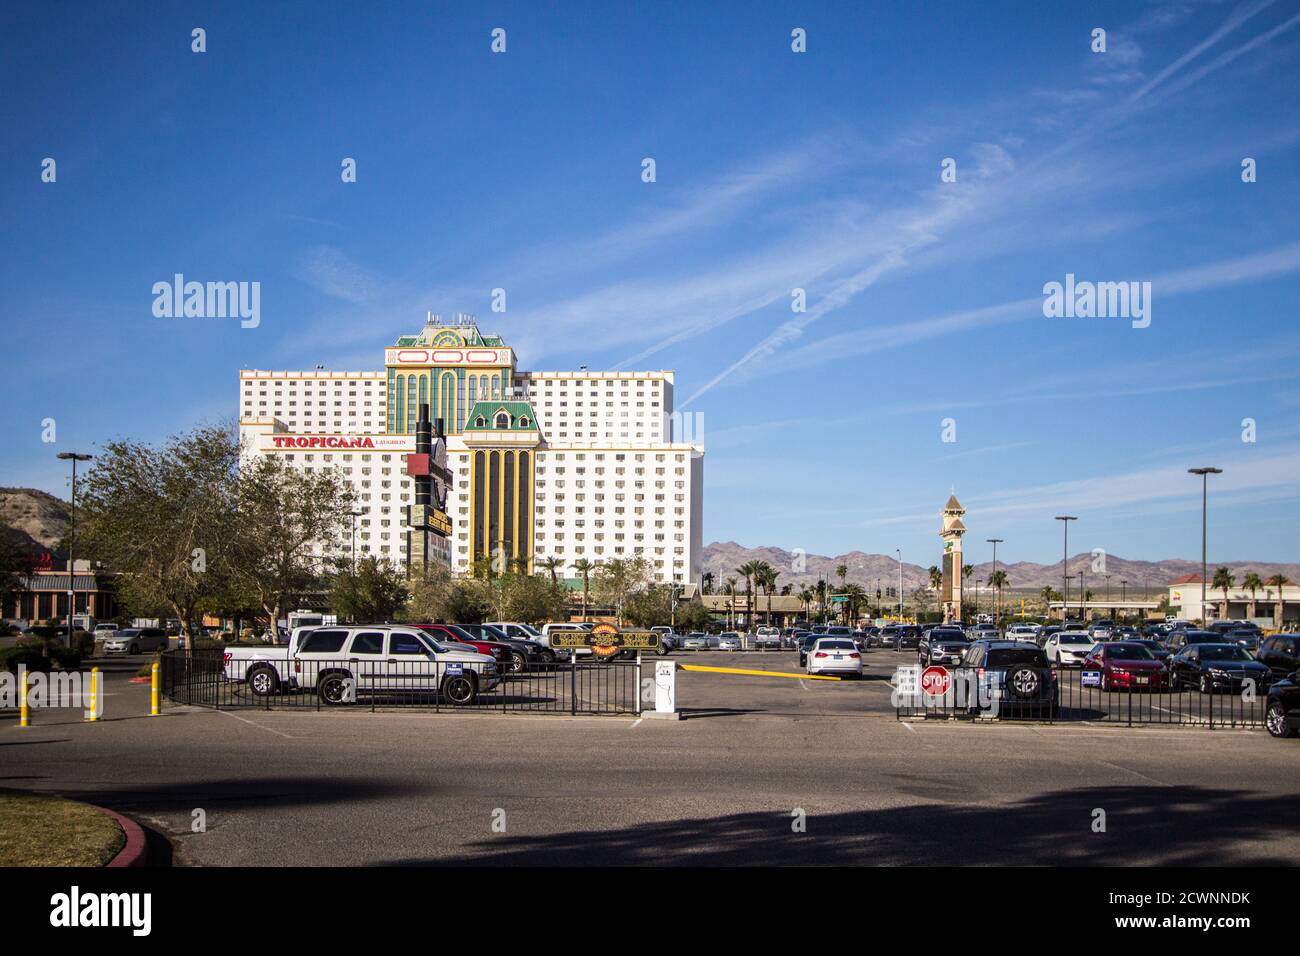 Laughlin, Nevada, USA - 17. Februar 2020: Verkehr auf dem Laughlin Strip mit dem Tropicana Resort im Hintergrund. Stockfoto